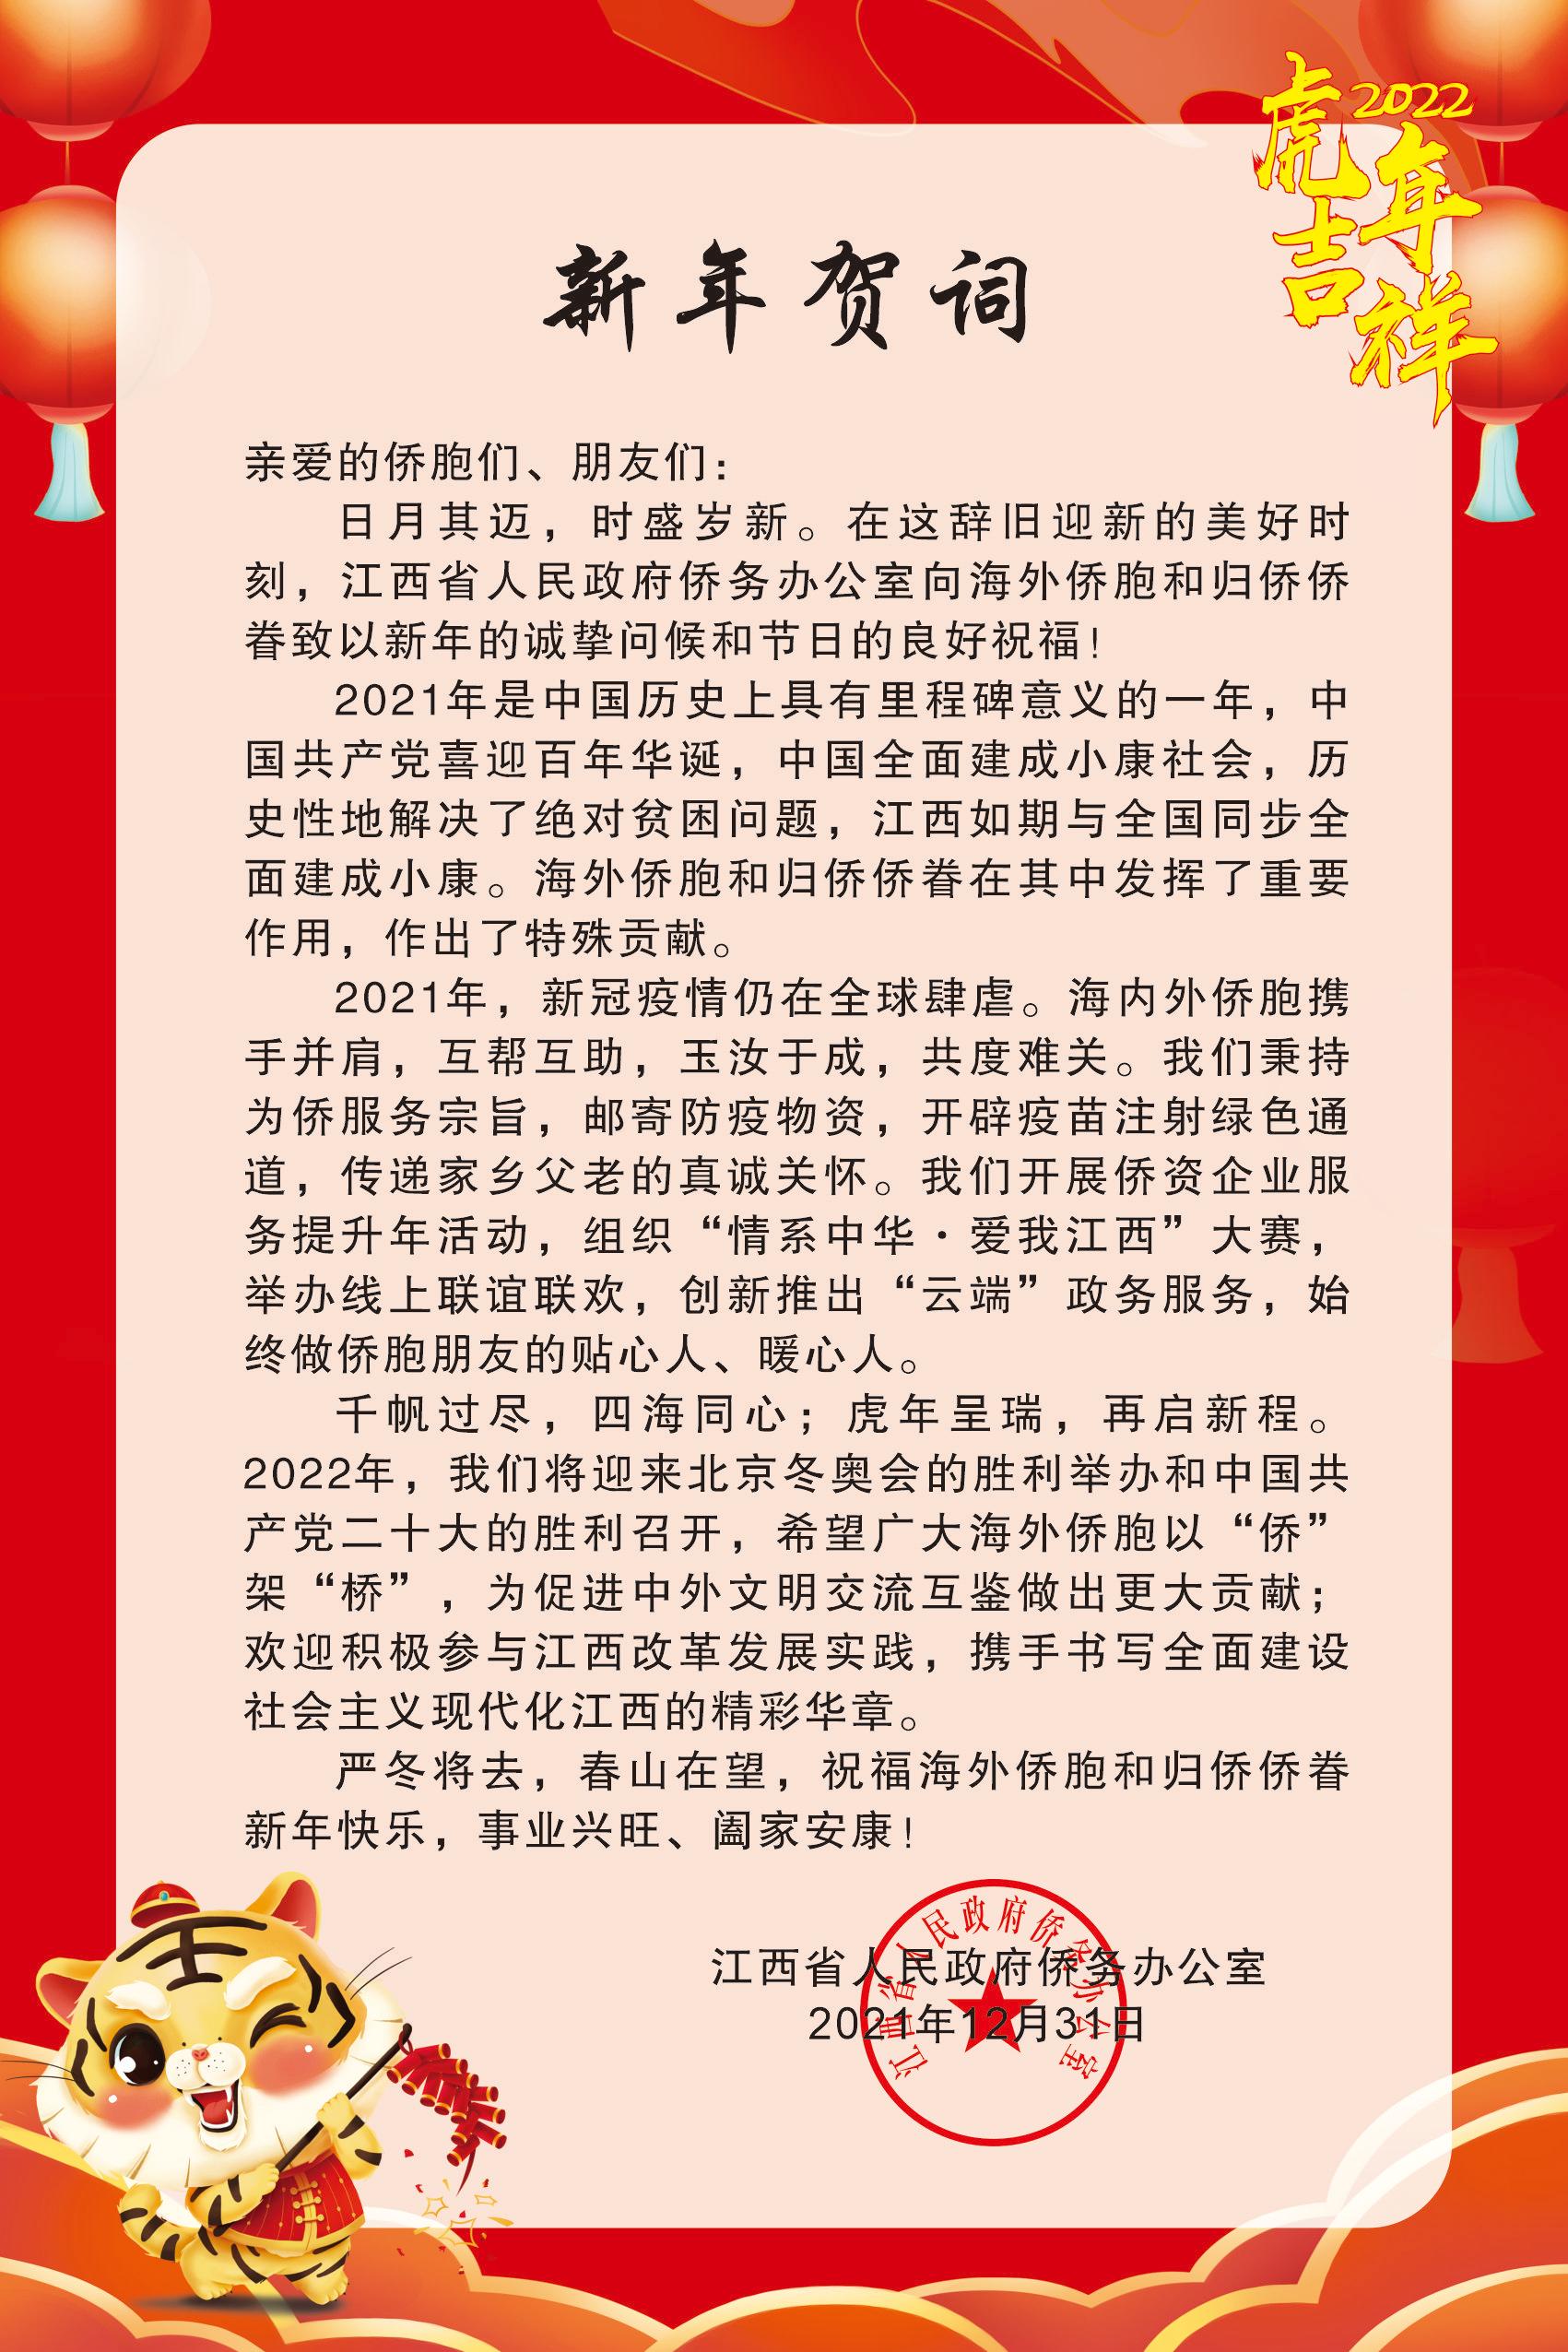 江西省人民政府侨务办公室发布致海内外侨胞2022新年贺词